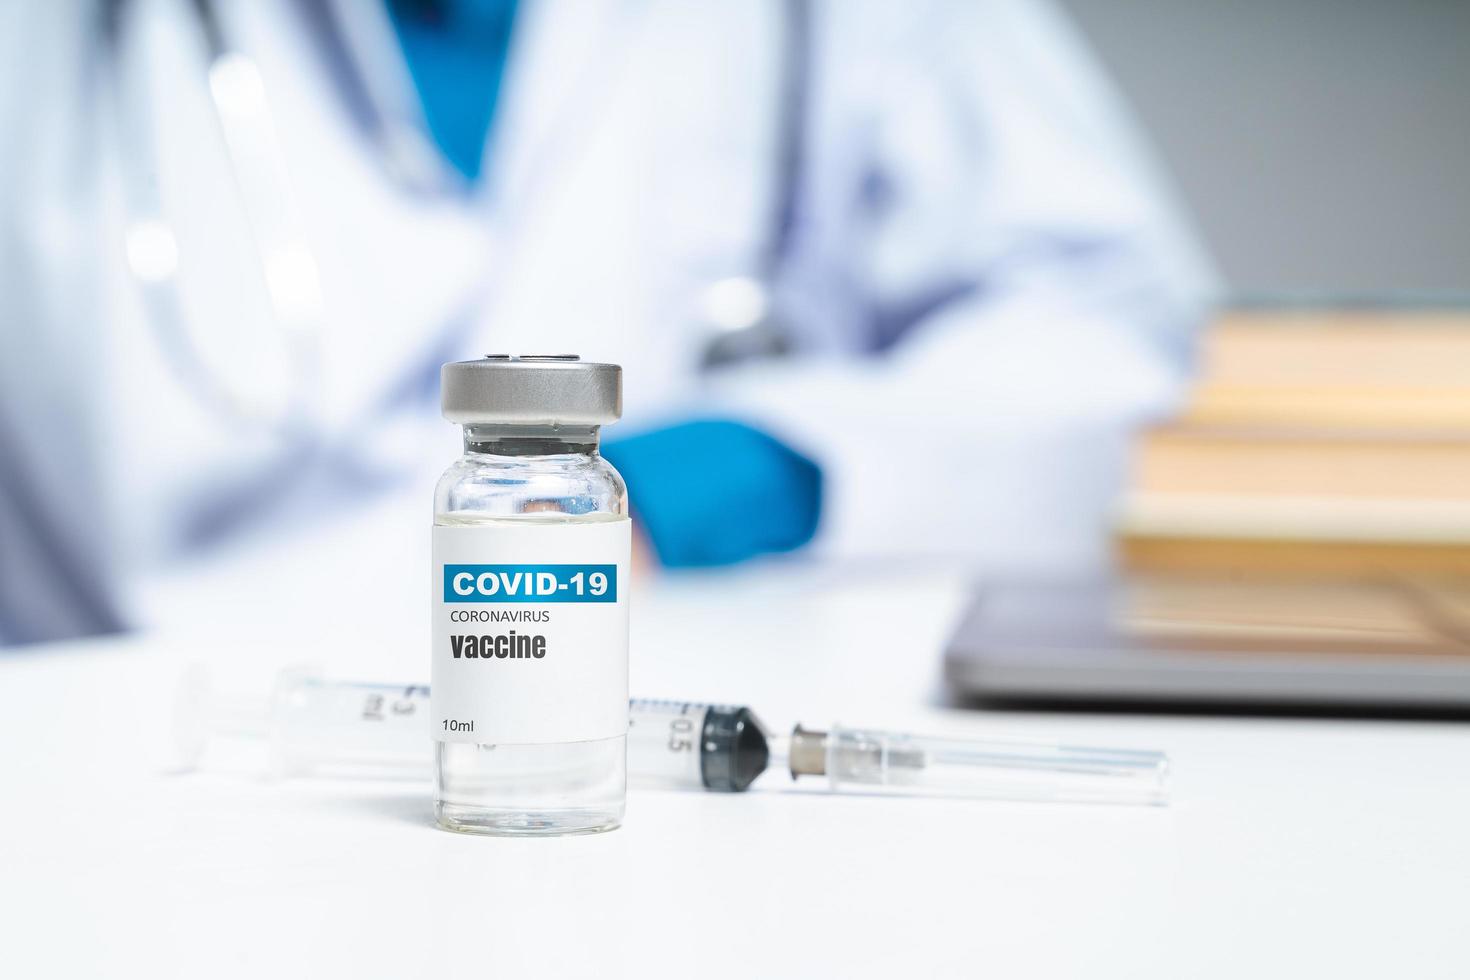 Vacuna contra el coronavirus covid-19 en la mesa con un médico o científico de fondo. concepto de tratamiento del coronavirus covid-19. foto